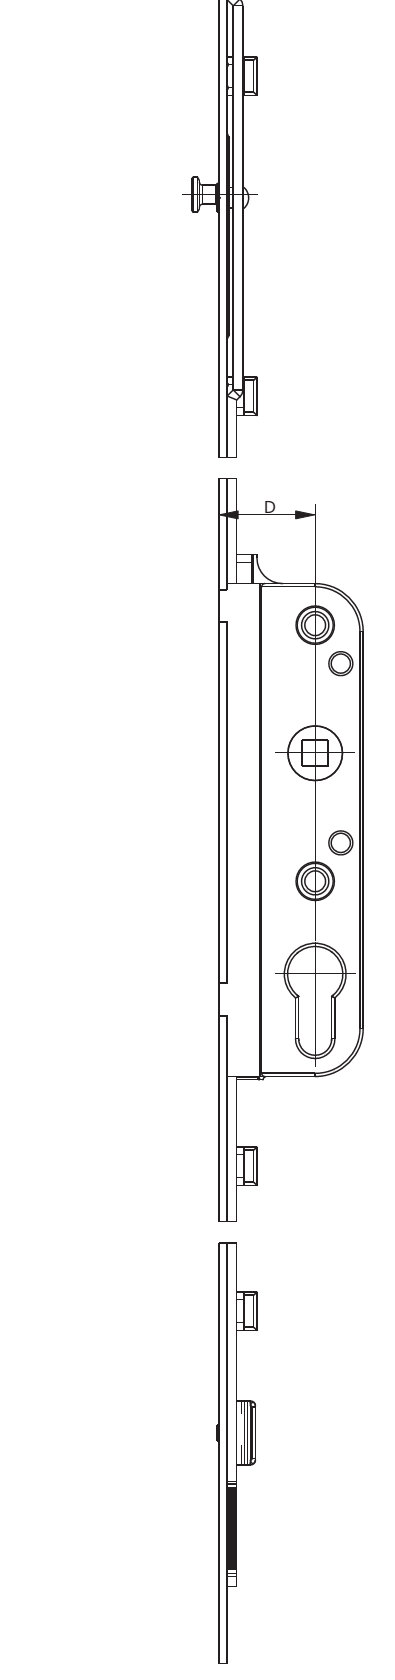 GU-ITALIA -  Cremonese GU-966 per complanare parallelo altezza maniglia fissa con foro cilindro - gr / dim. 1840 - entrata 30 - alt. man. 980 - lbb/hbb 2121-2370